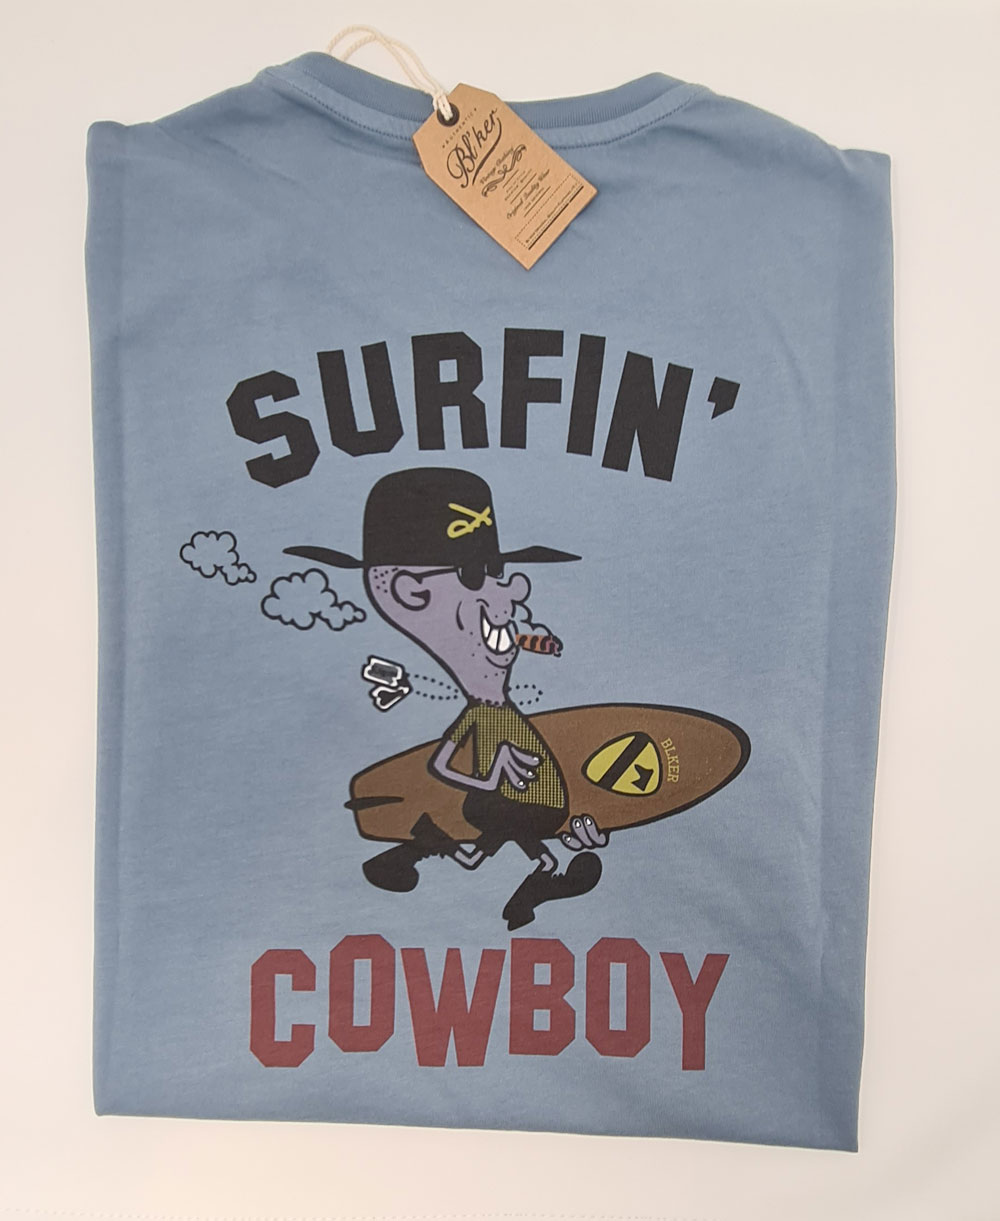 Surfing Cowboy T-Shirt à Manches Courtes Homme Petroleum